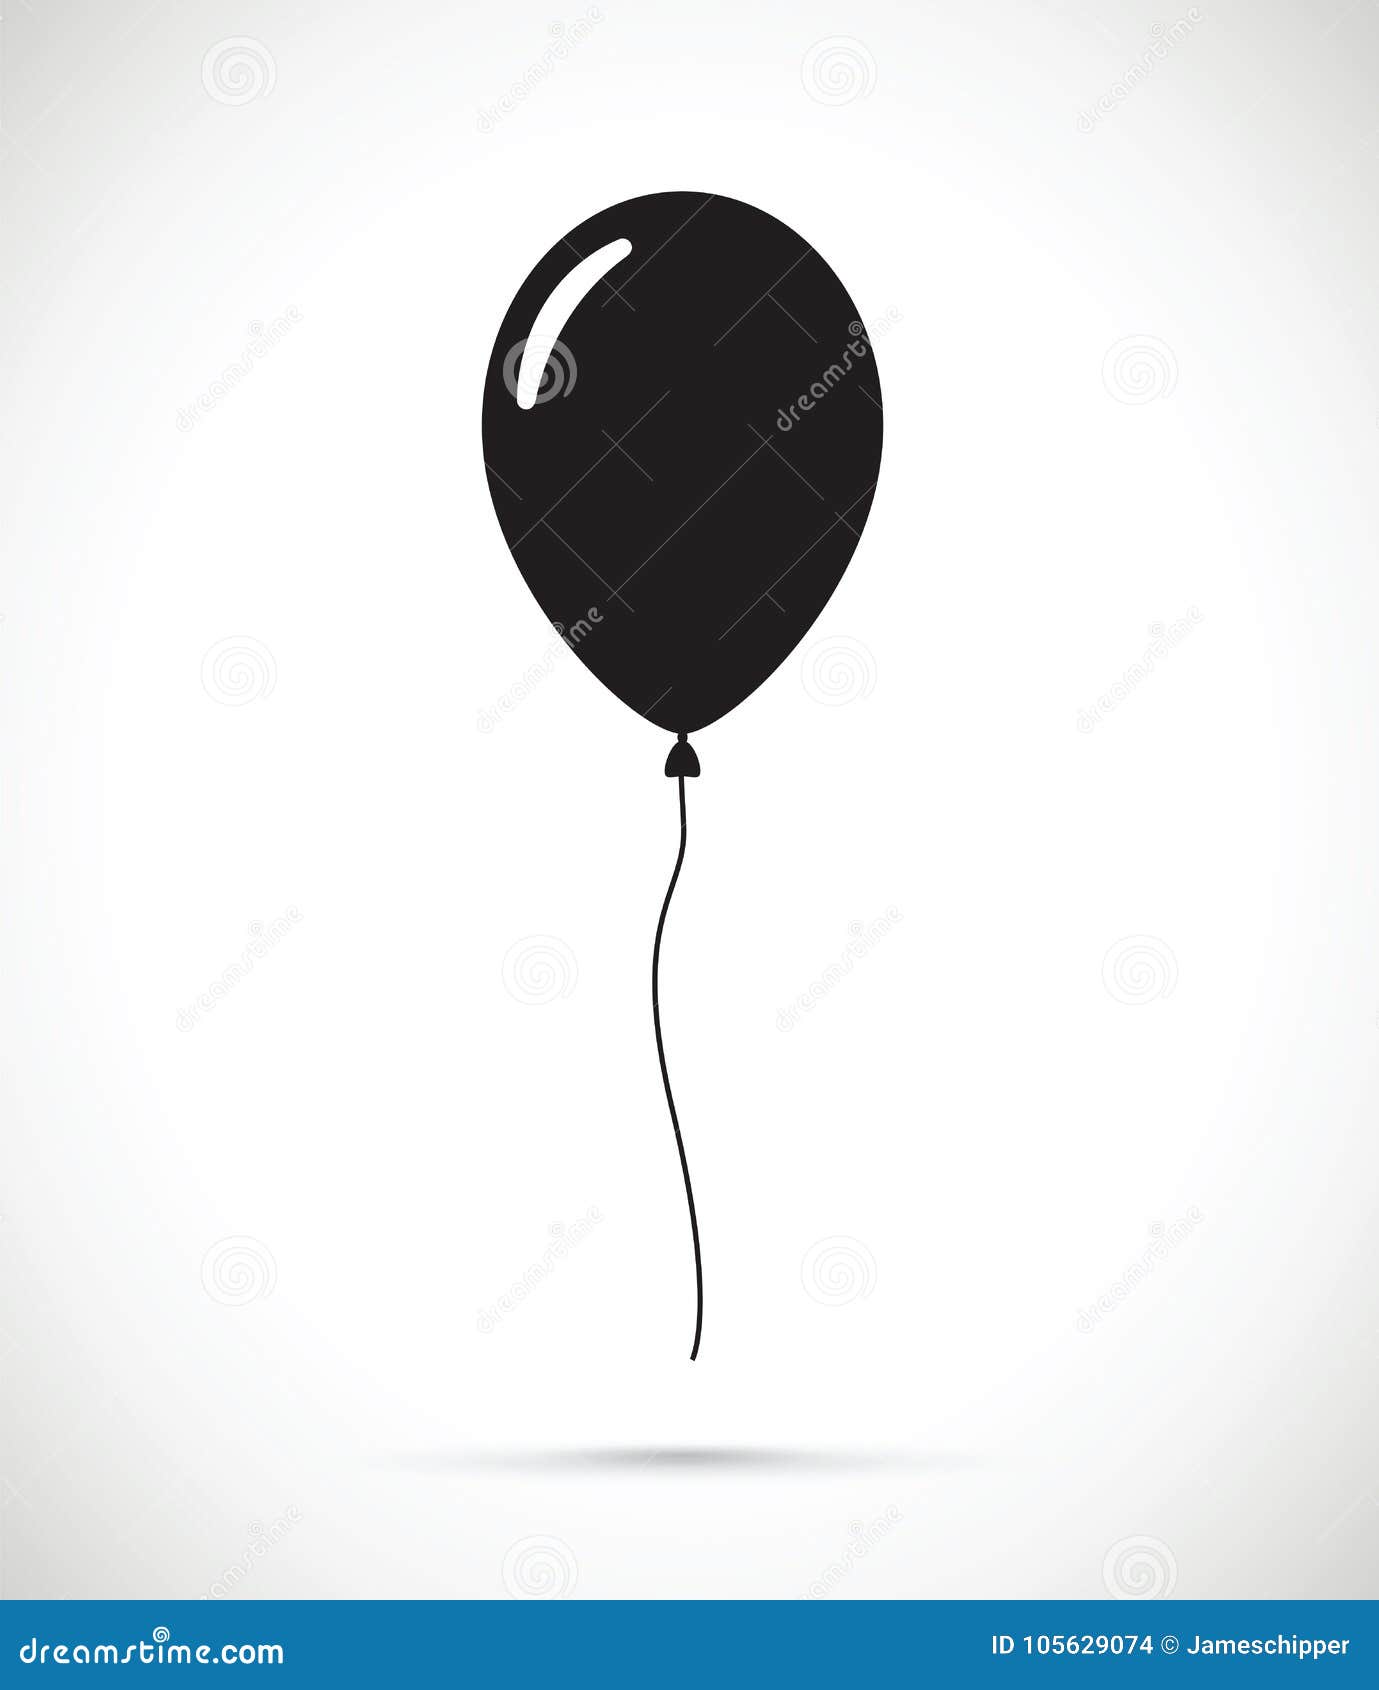 a black balloon